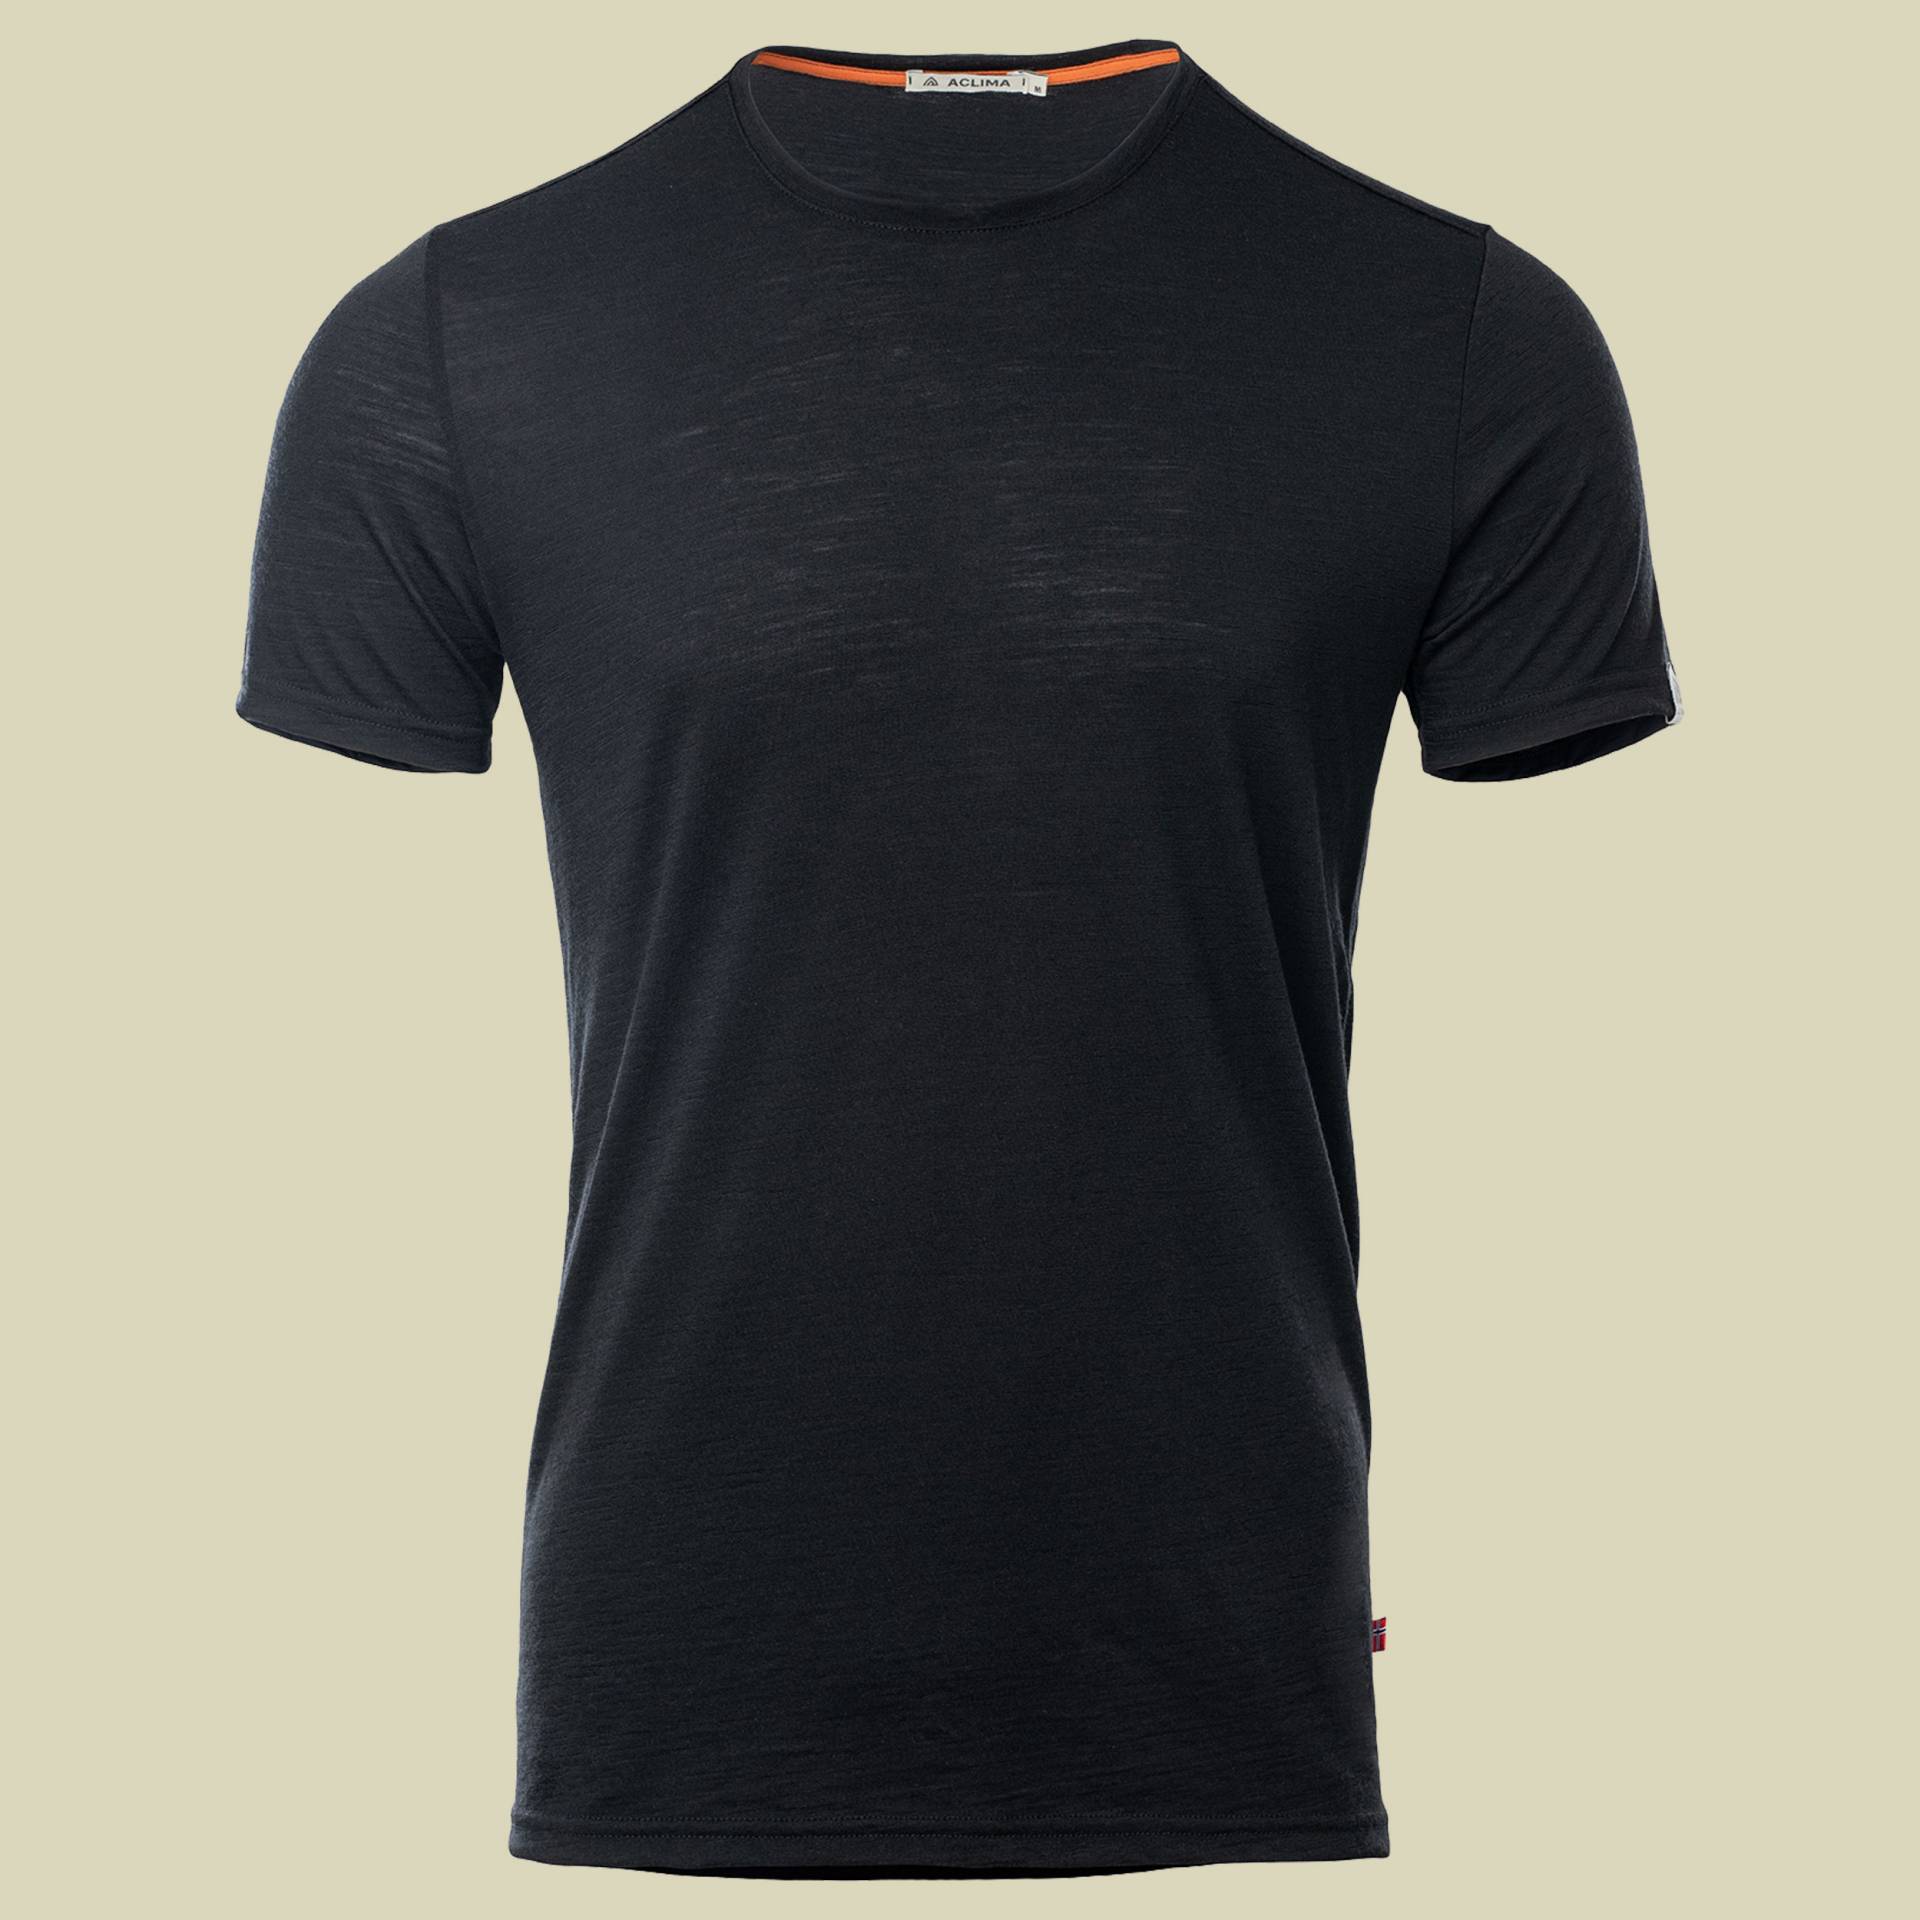 LightWool T-Shirt Men schwarz M - jet black von aclima